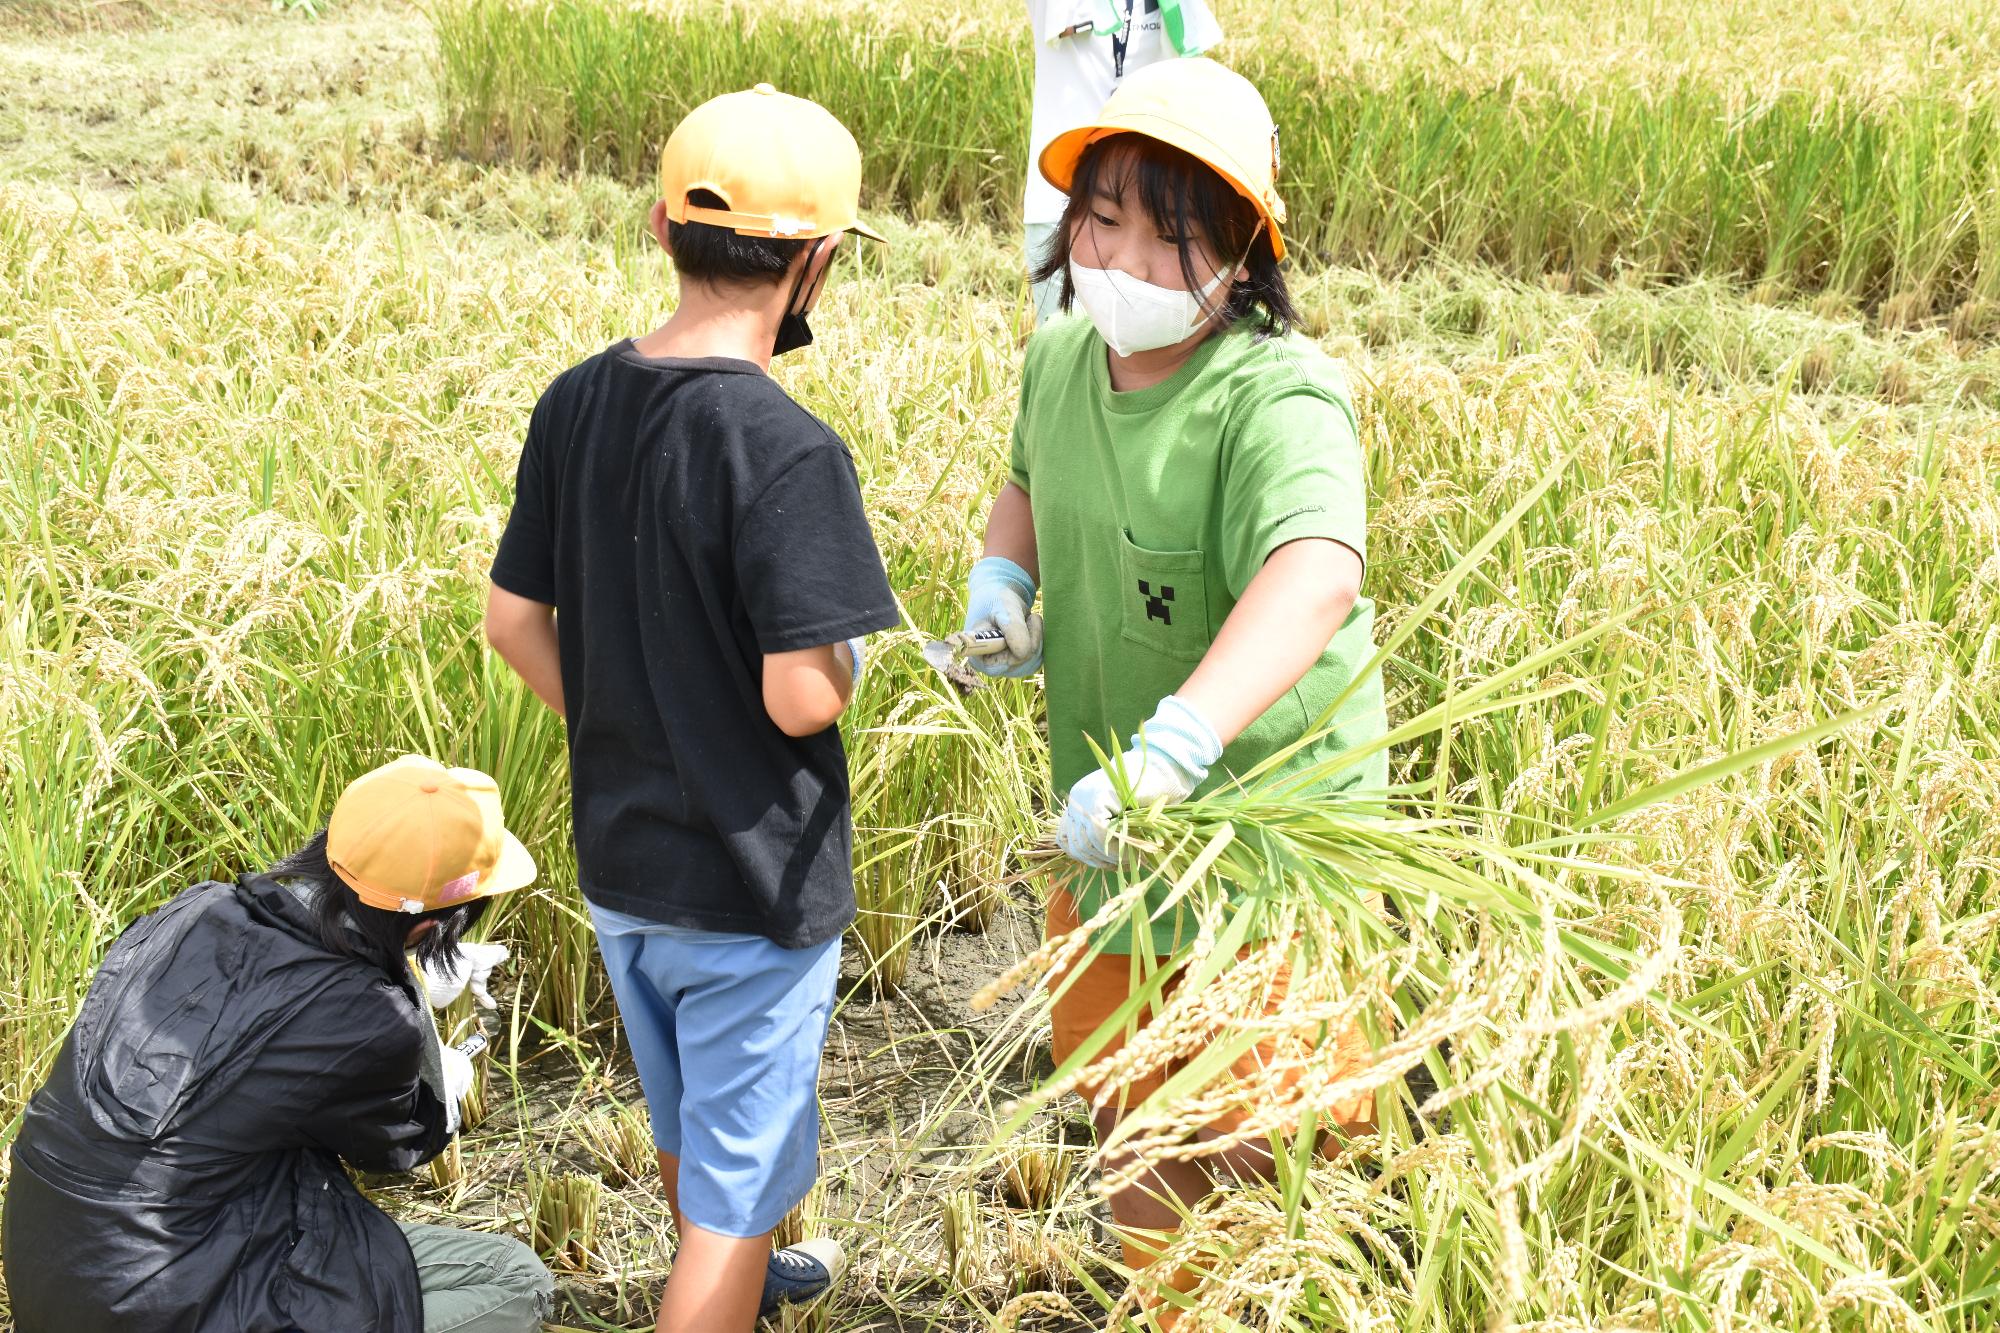 鎌で稲を刈り取る緑のTシャツの女子小学生と黒いTシャツの男子小学生二人